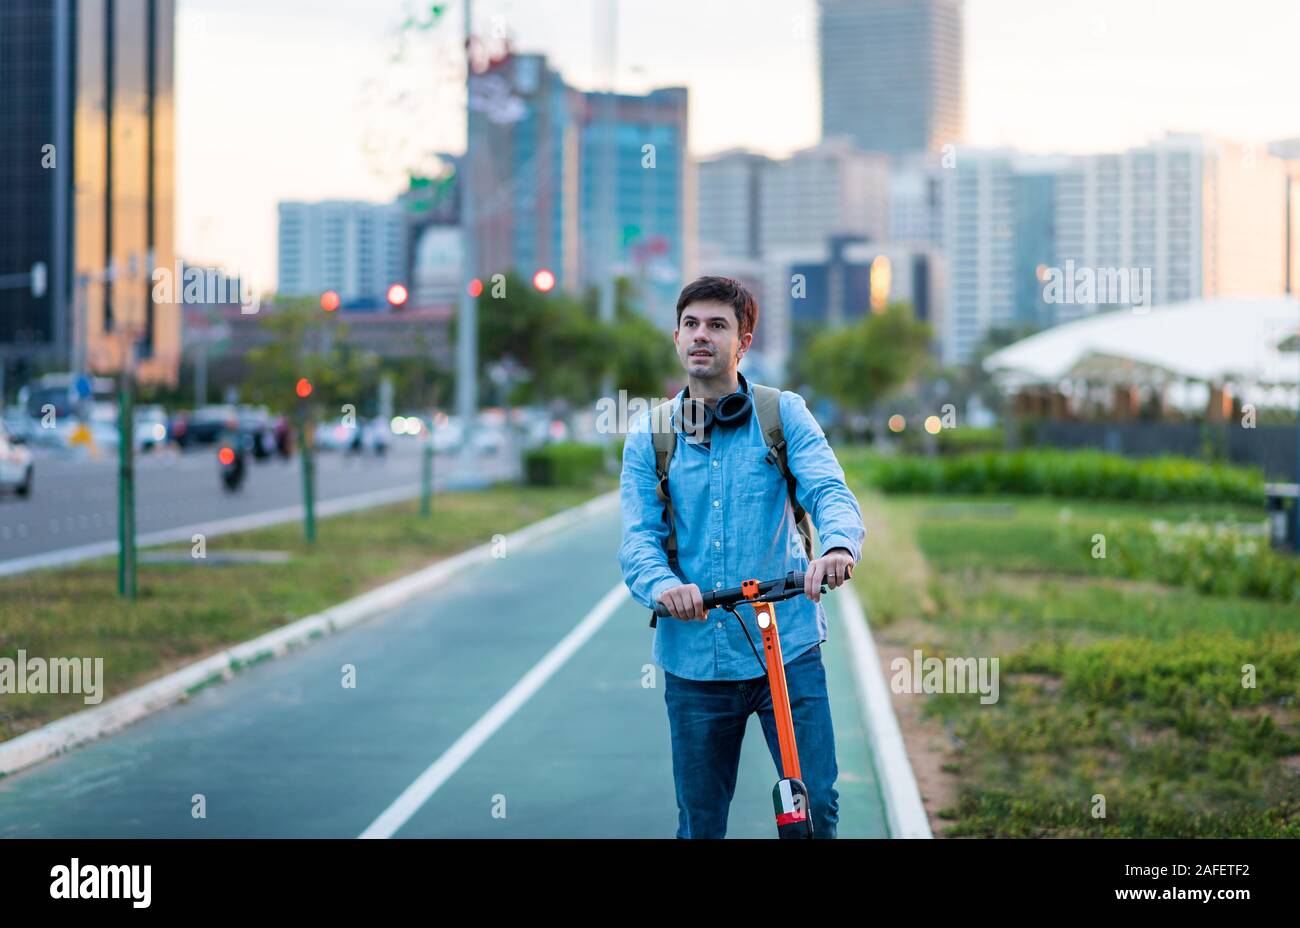 Mann mit elektrischer Roller für den Transport in einer modernen Stadt Umgebung Stockfoto